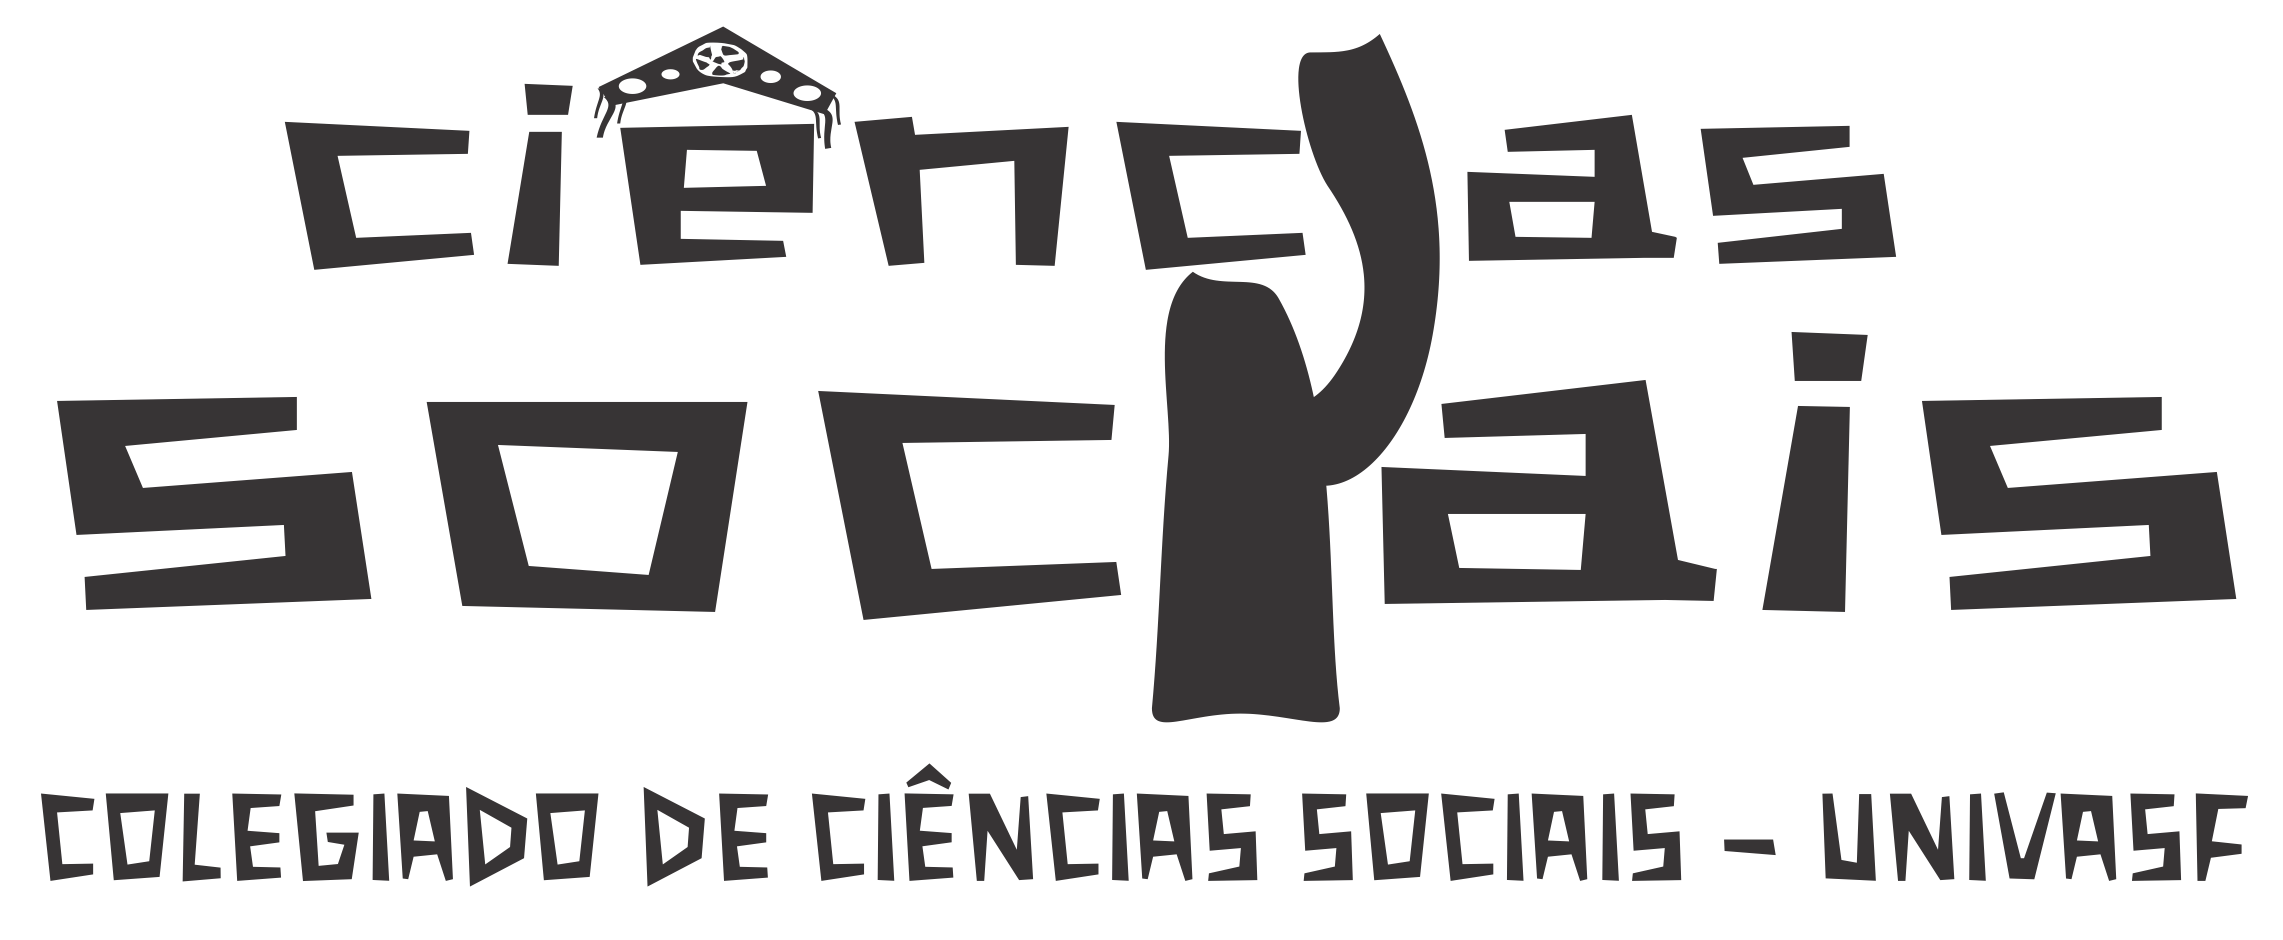 Colegiado de Ciências Sociais – UNIVASF